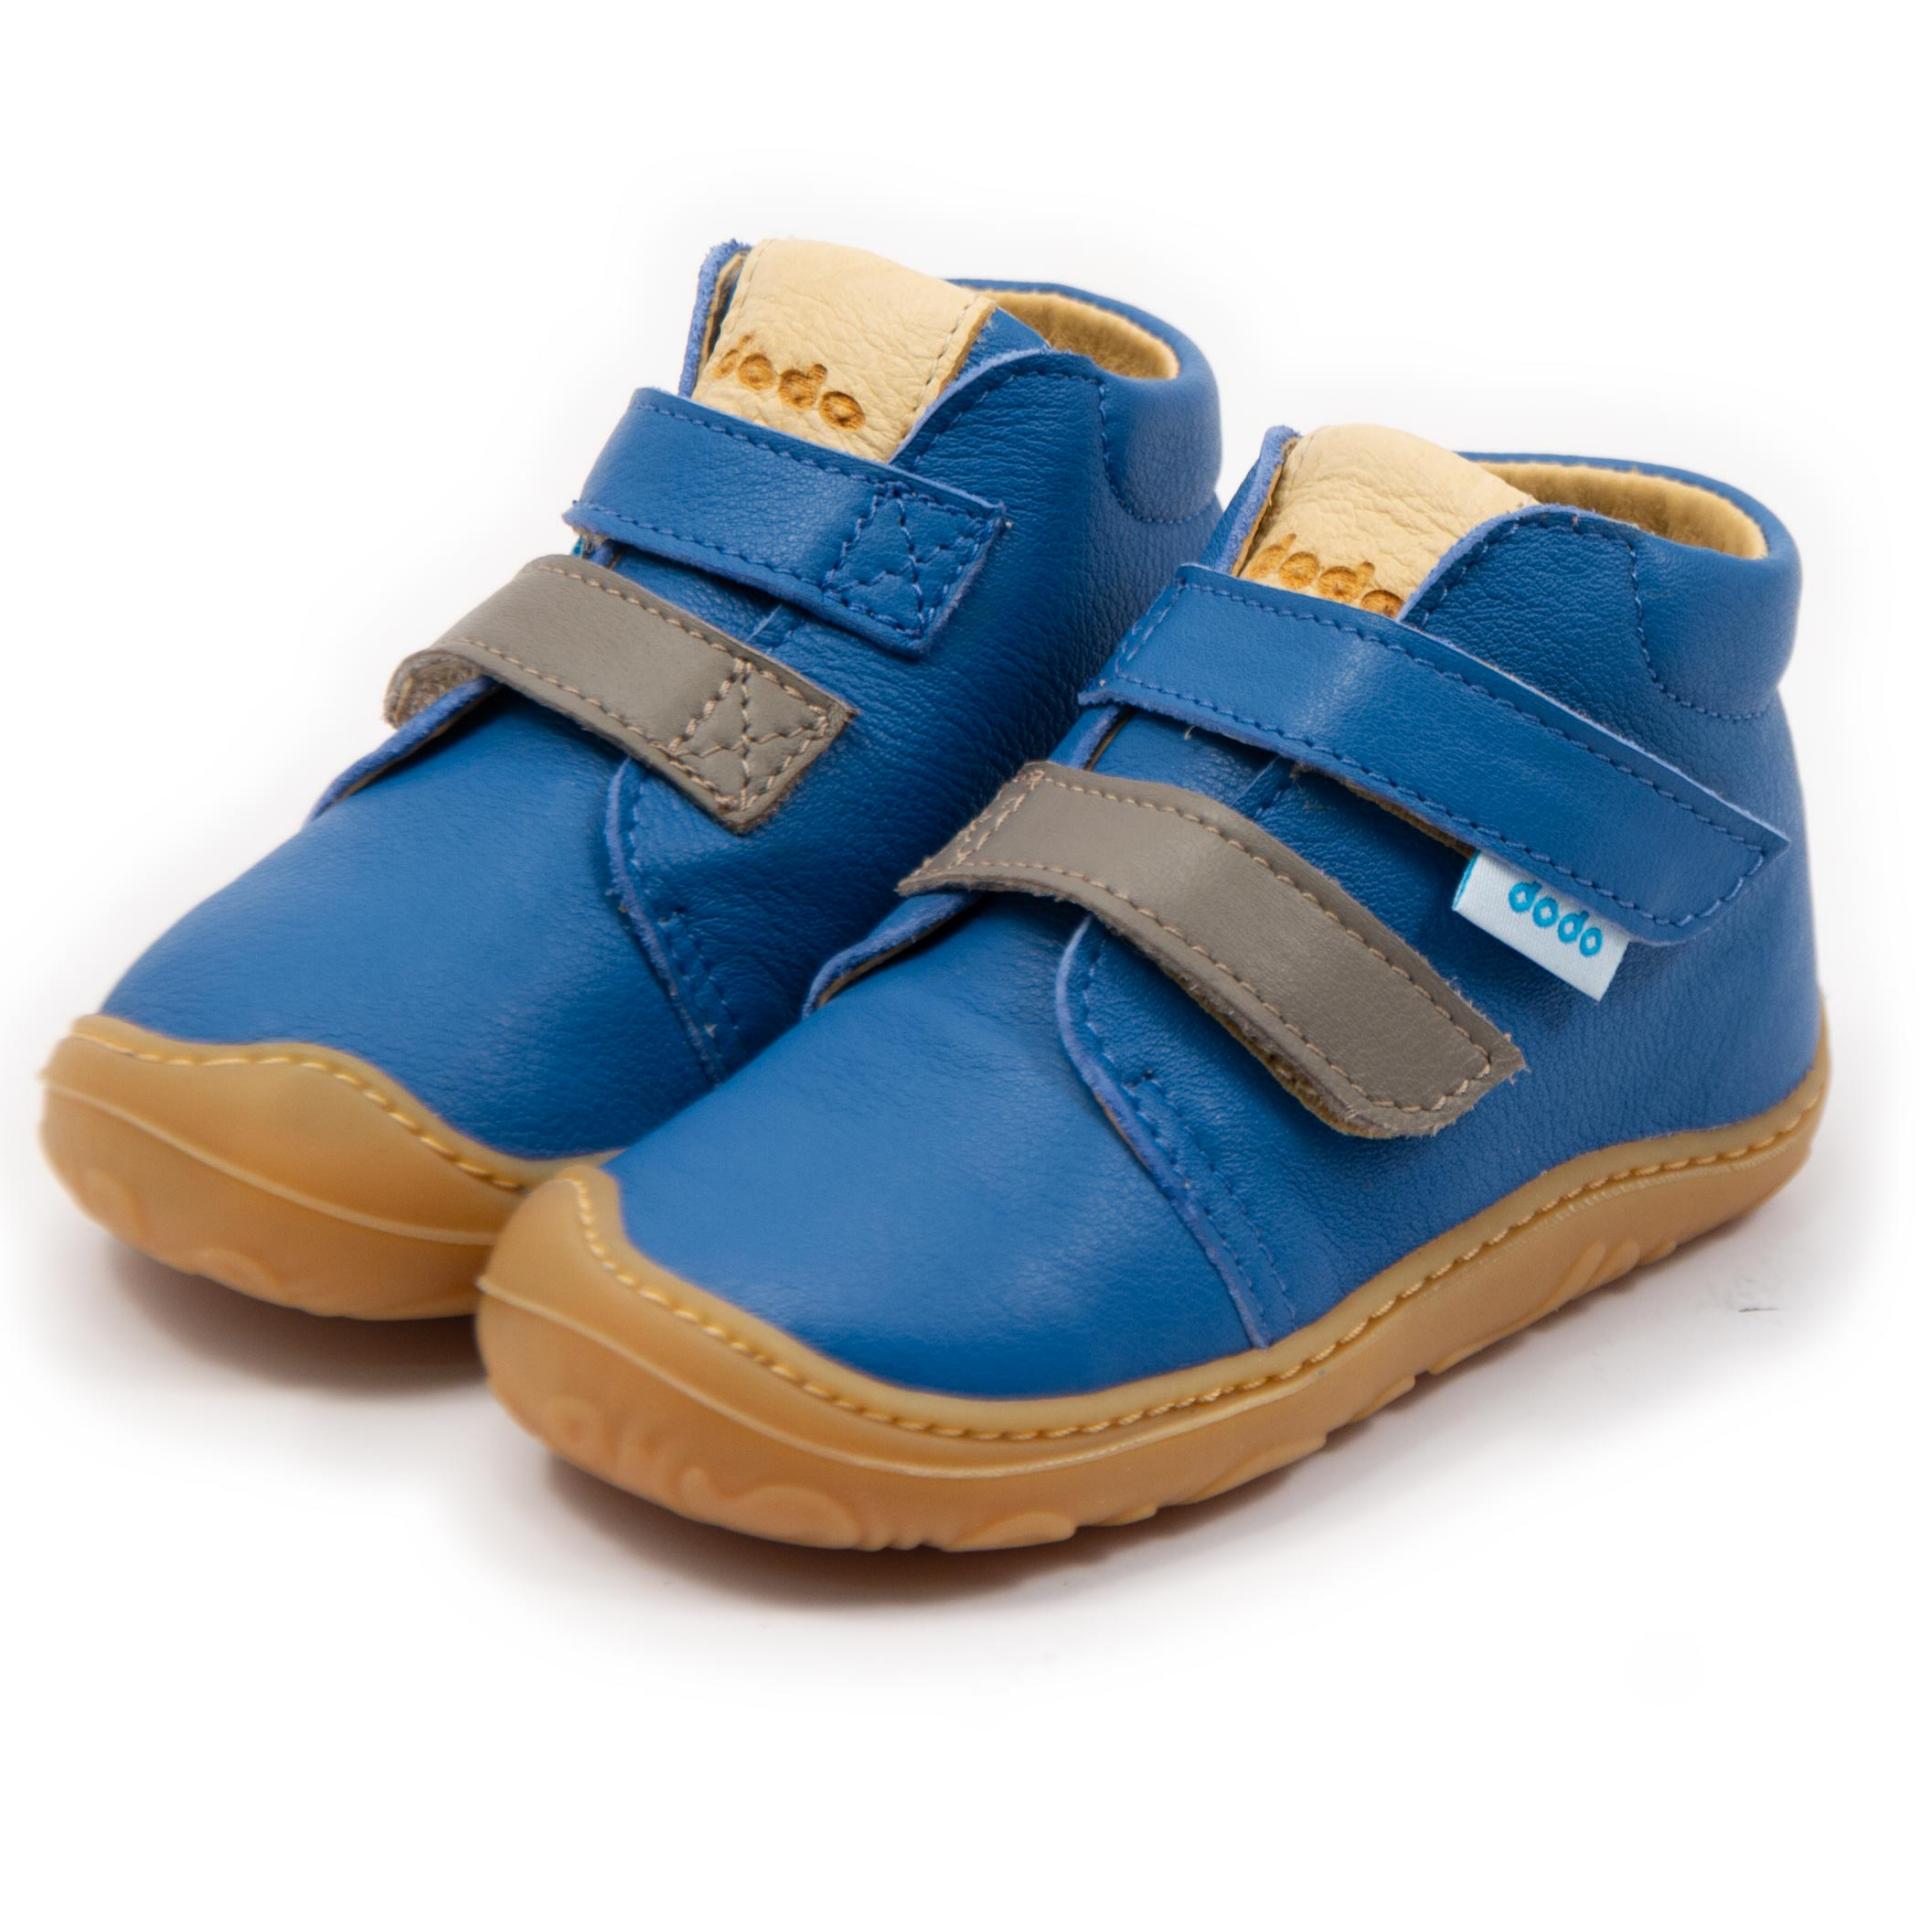 Noah Blue boots | Dodo Shoes